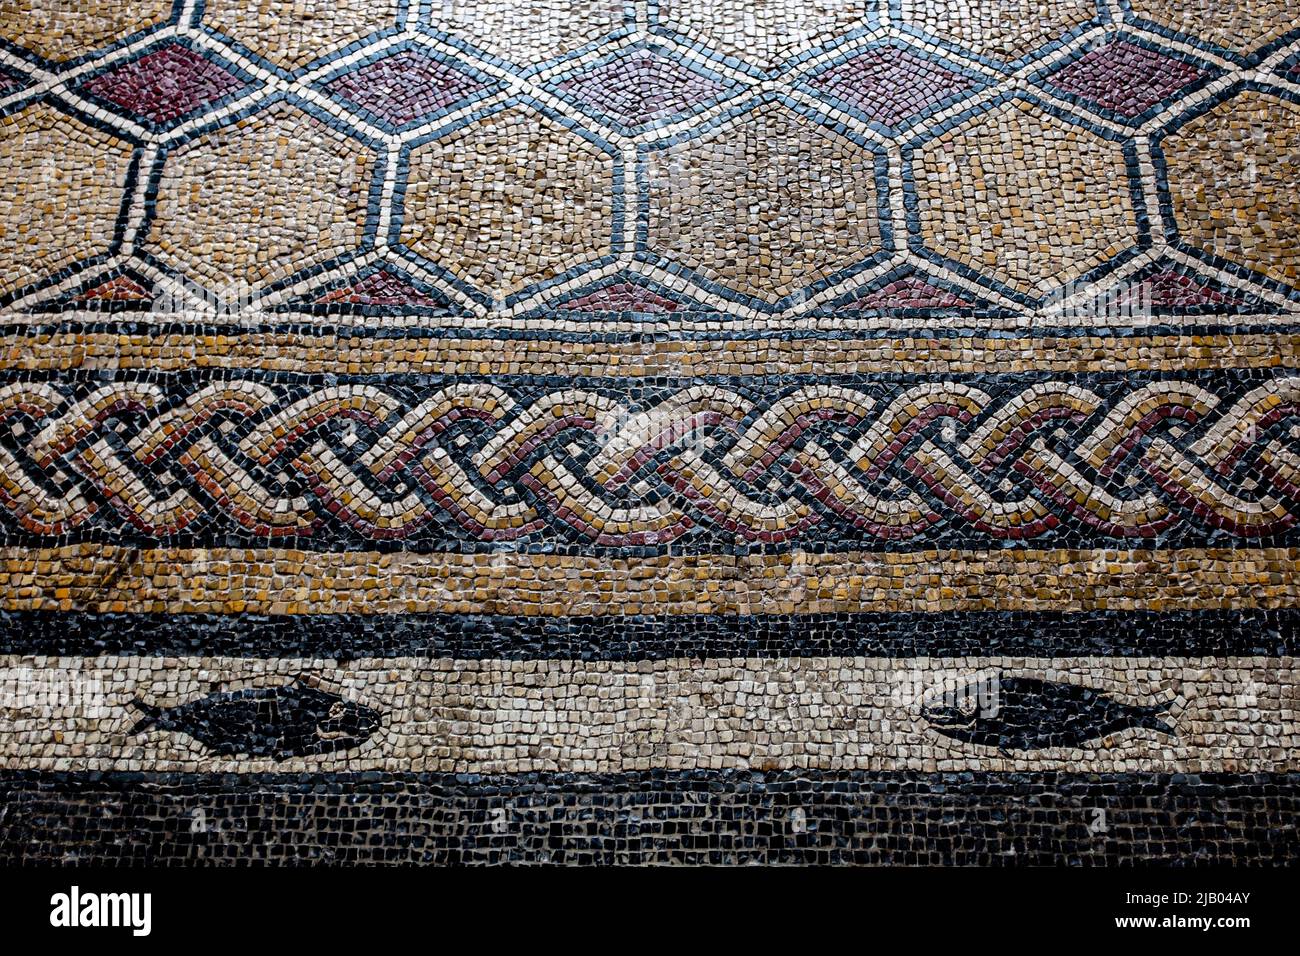 Detail of the Hearst Castle mosaic tile floor. Hearst Castle. San Simeon, CA. 06/2017 Stock Photo